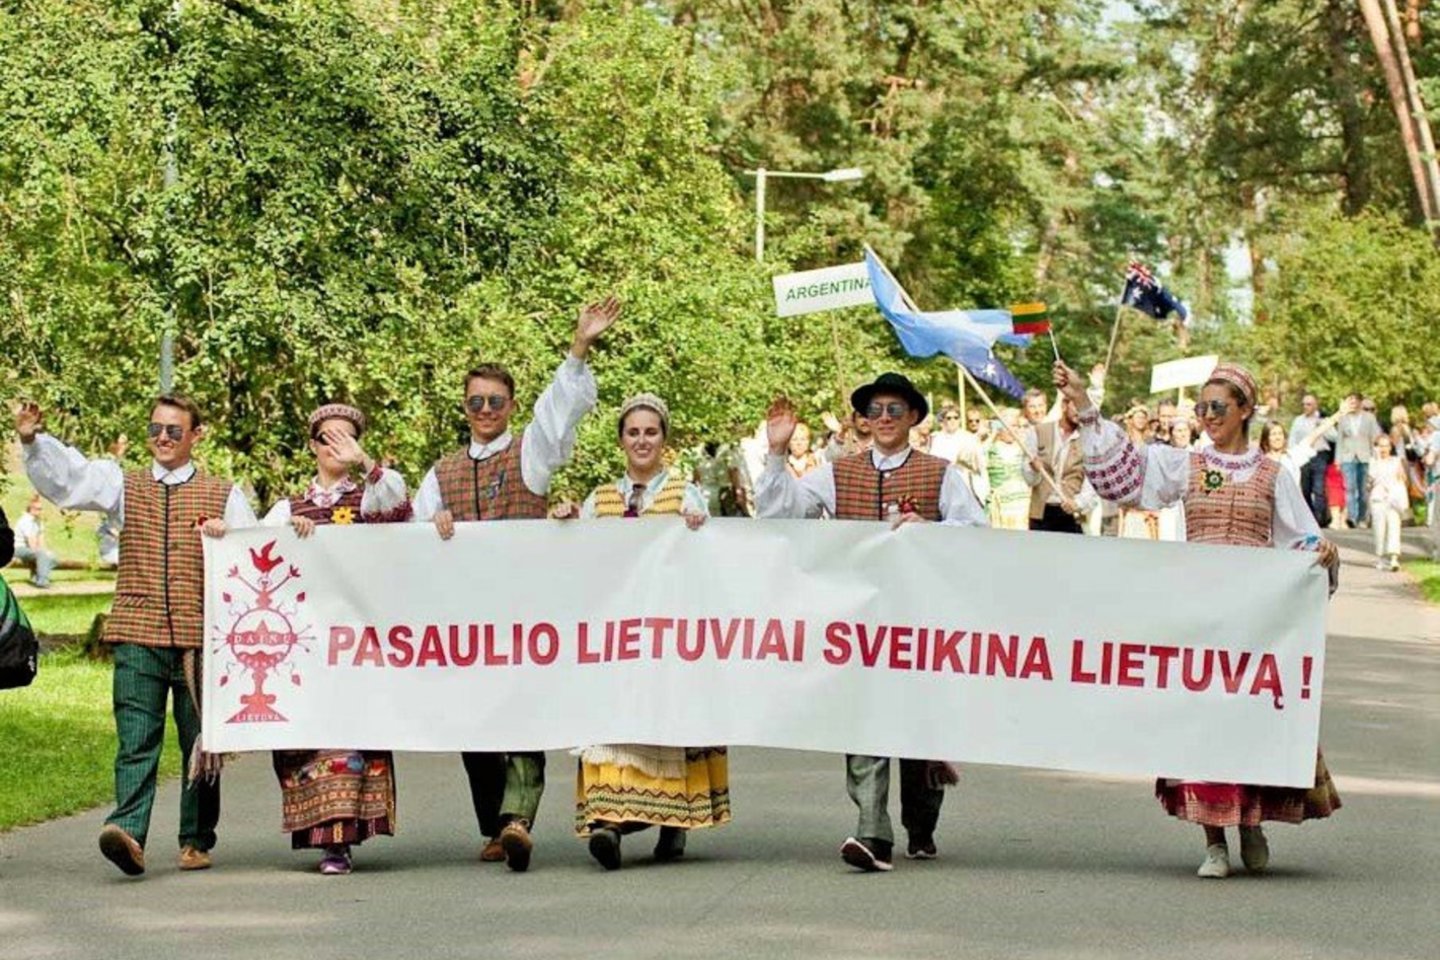  Viso pasaulio lietuviai susitiks Vilniaus Rotušės aikštėje.<br> LNKC nuotr.